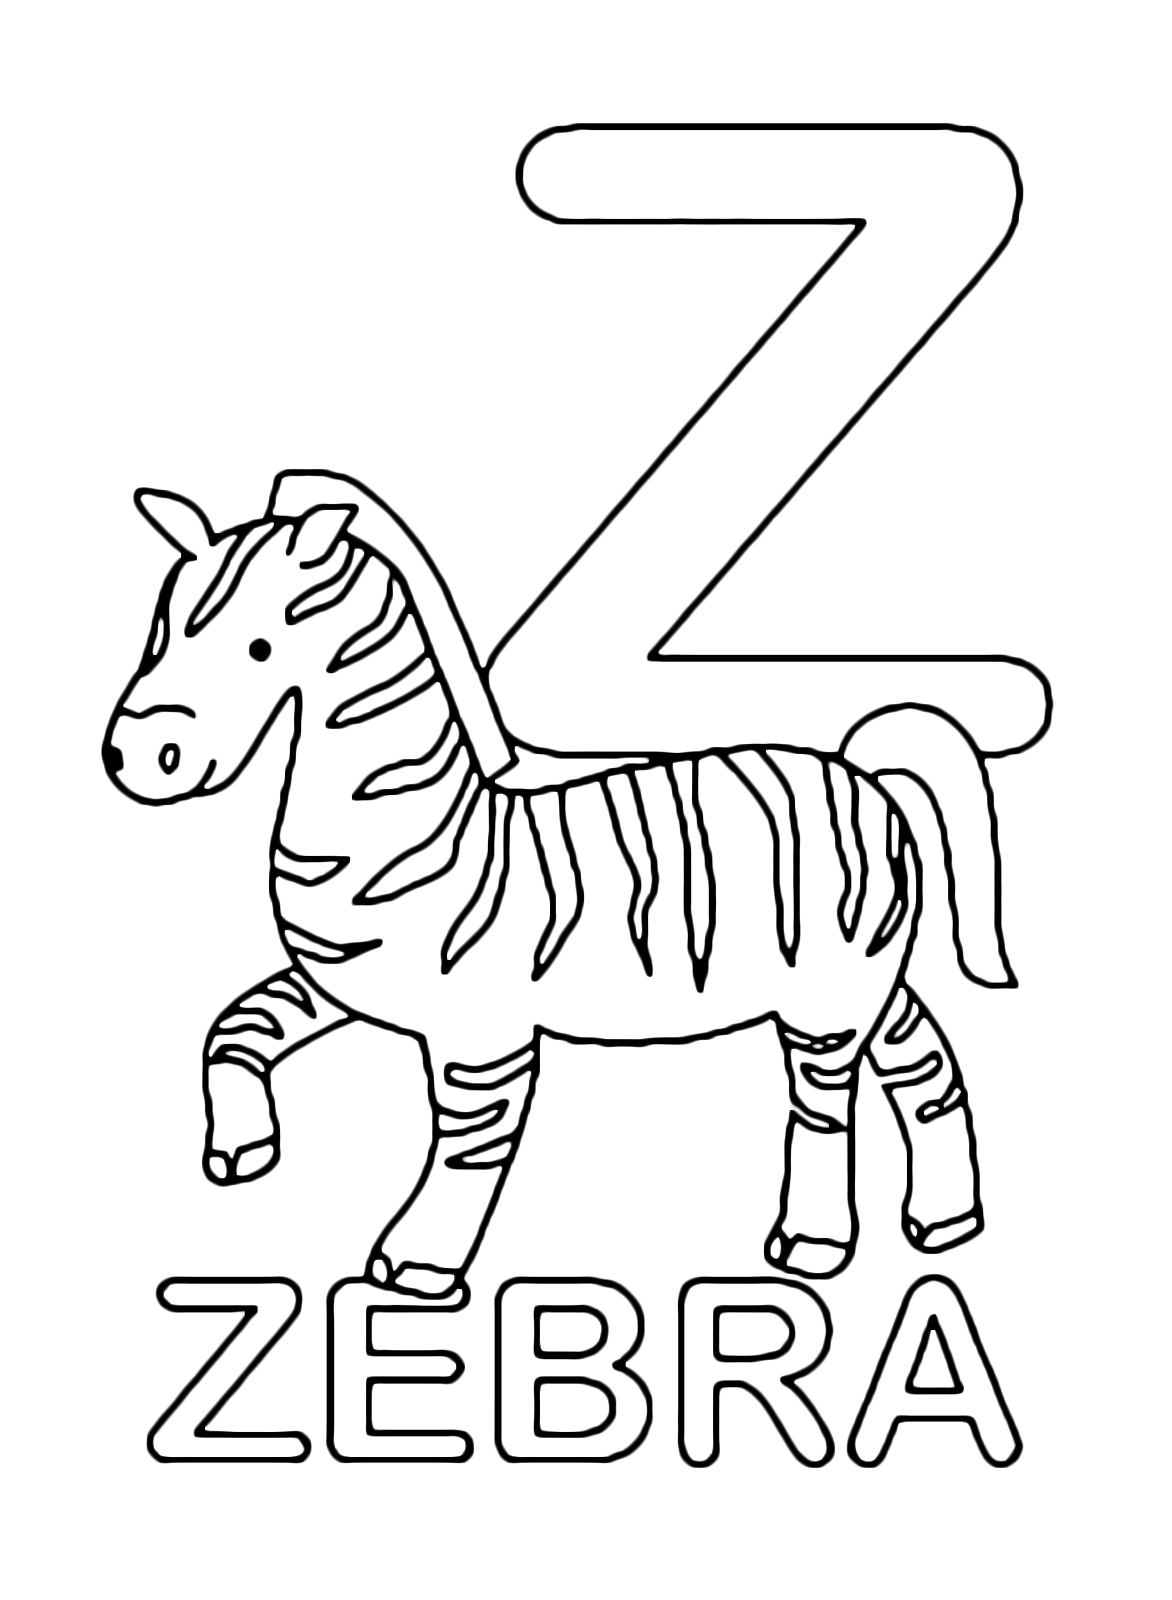 Lettere e numeri - Lettera Z in stampatello di zebra in Inglese